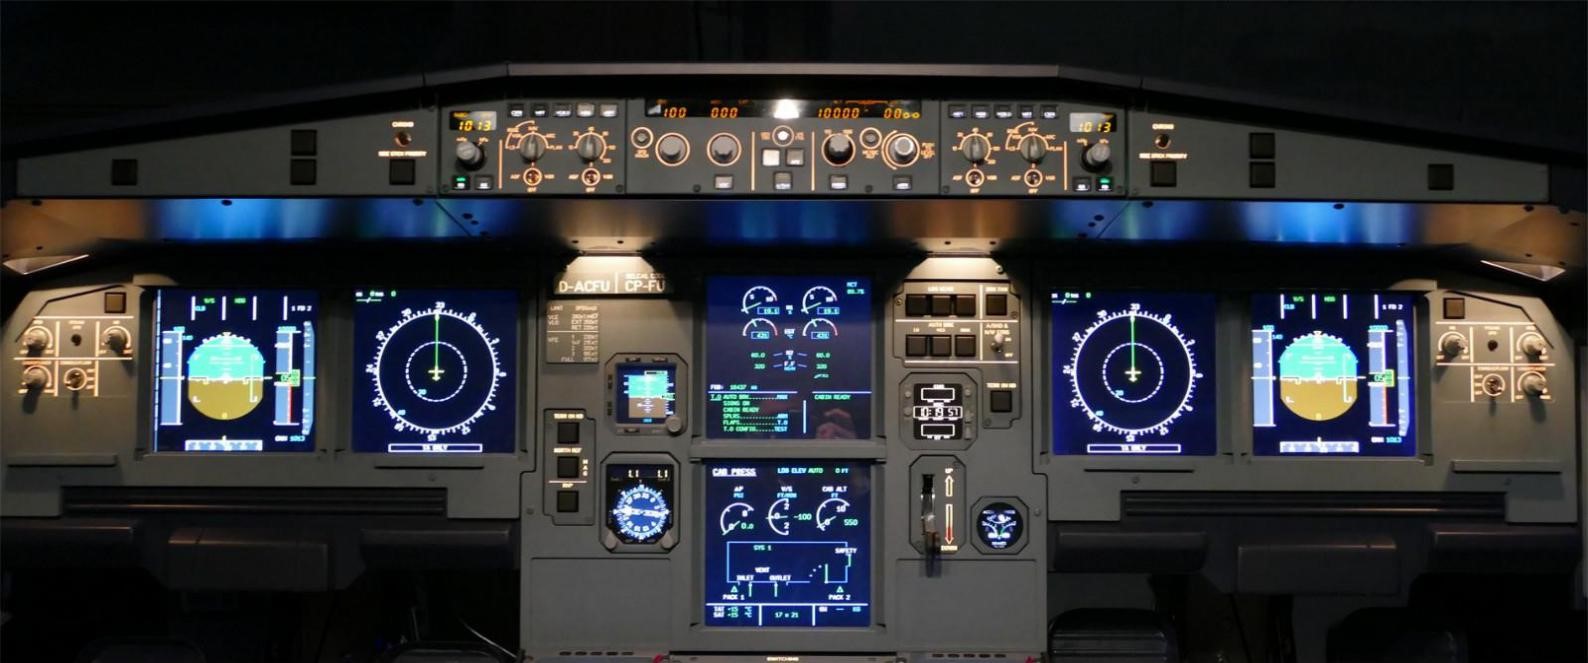 飞行者联盟空客A320模拟舱 整舱产品发布！-1048 